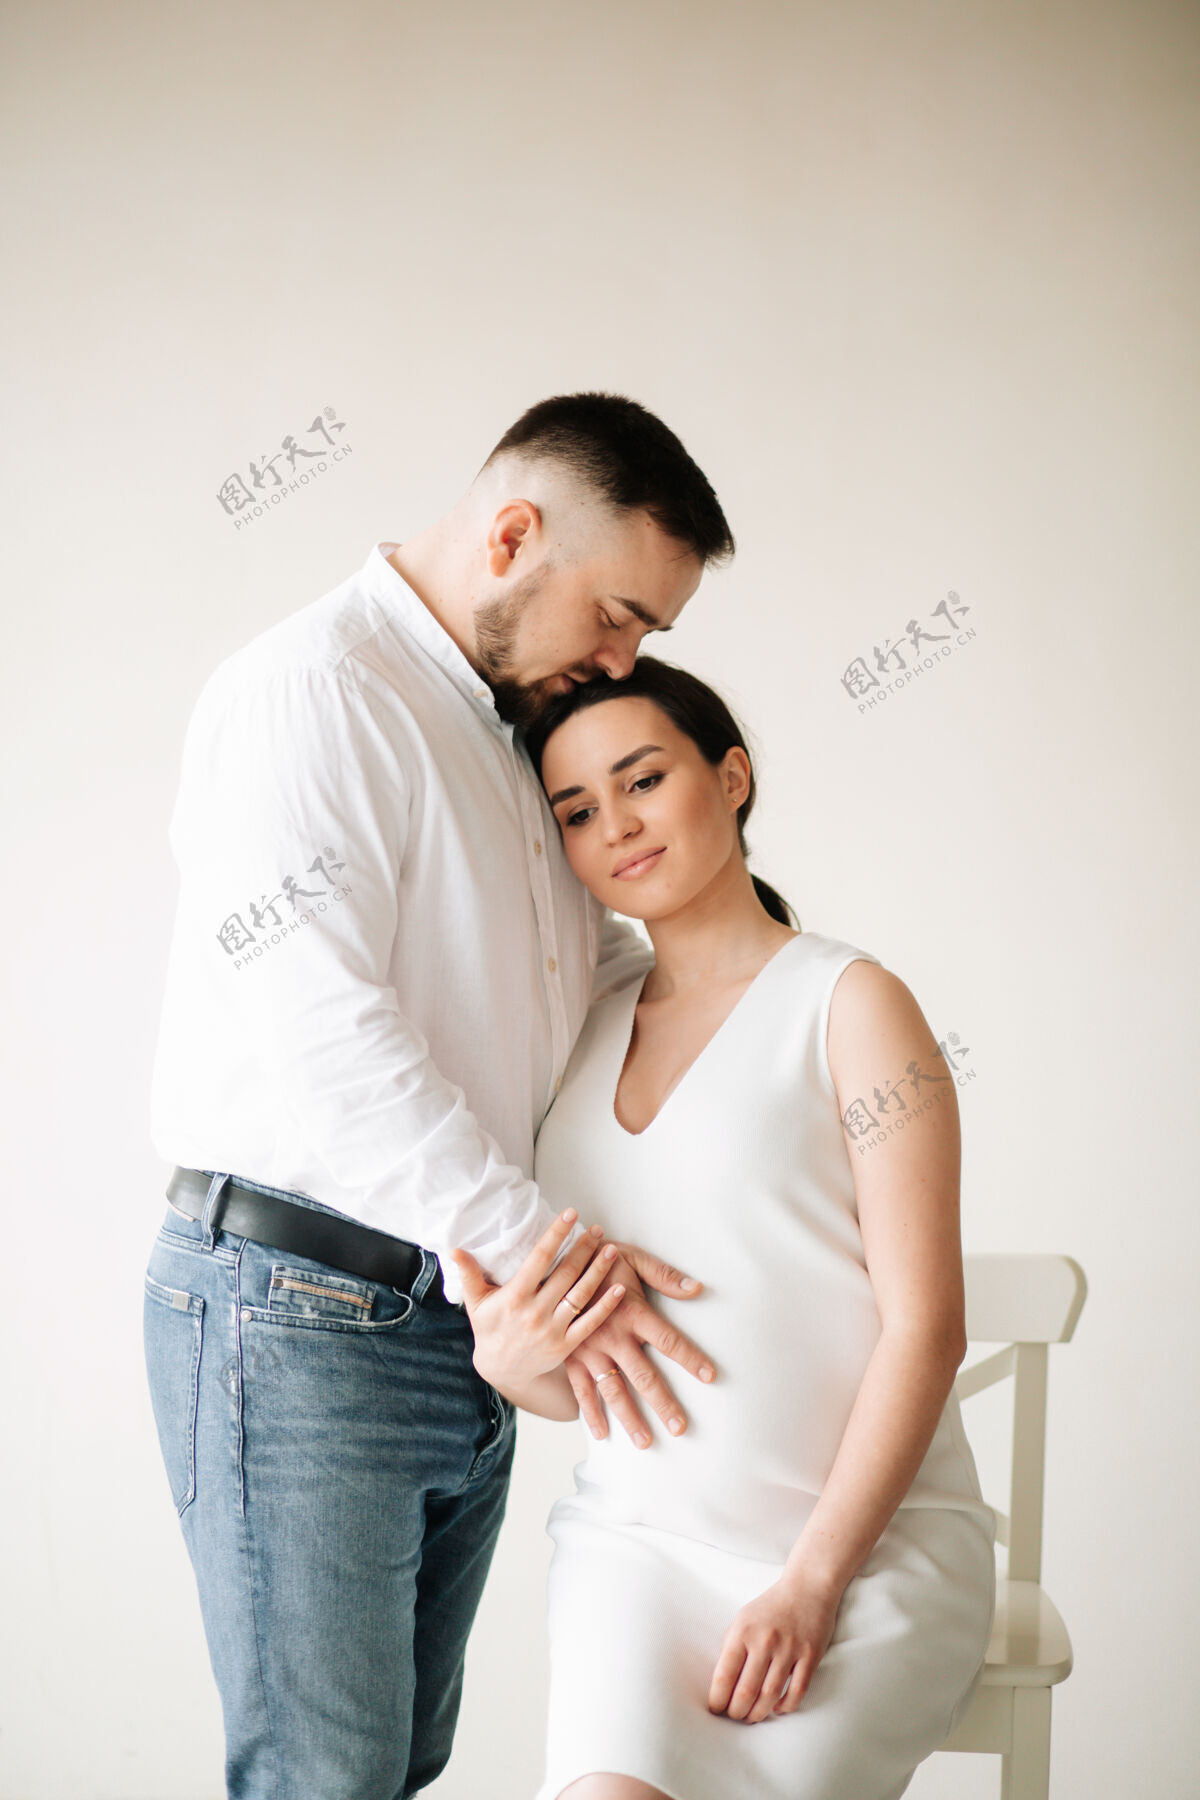 期望快乐迷人的孕妇和她的丈夫在摄影棚里合影腹部腹部男性